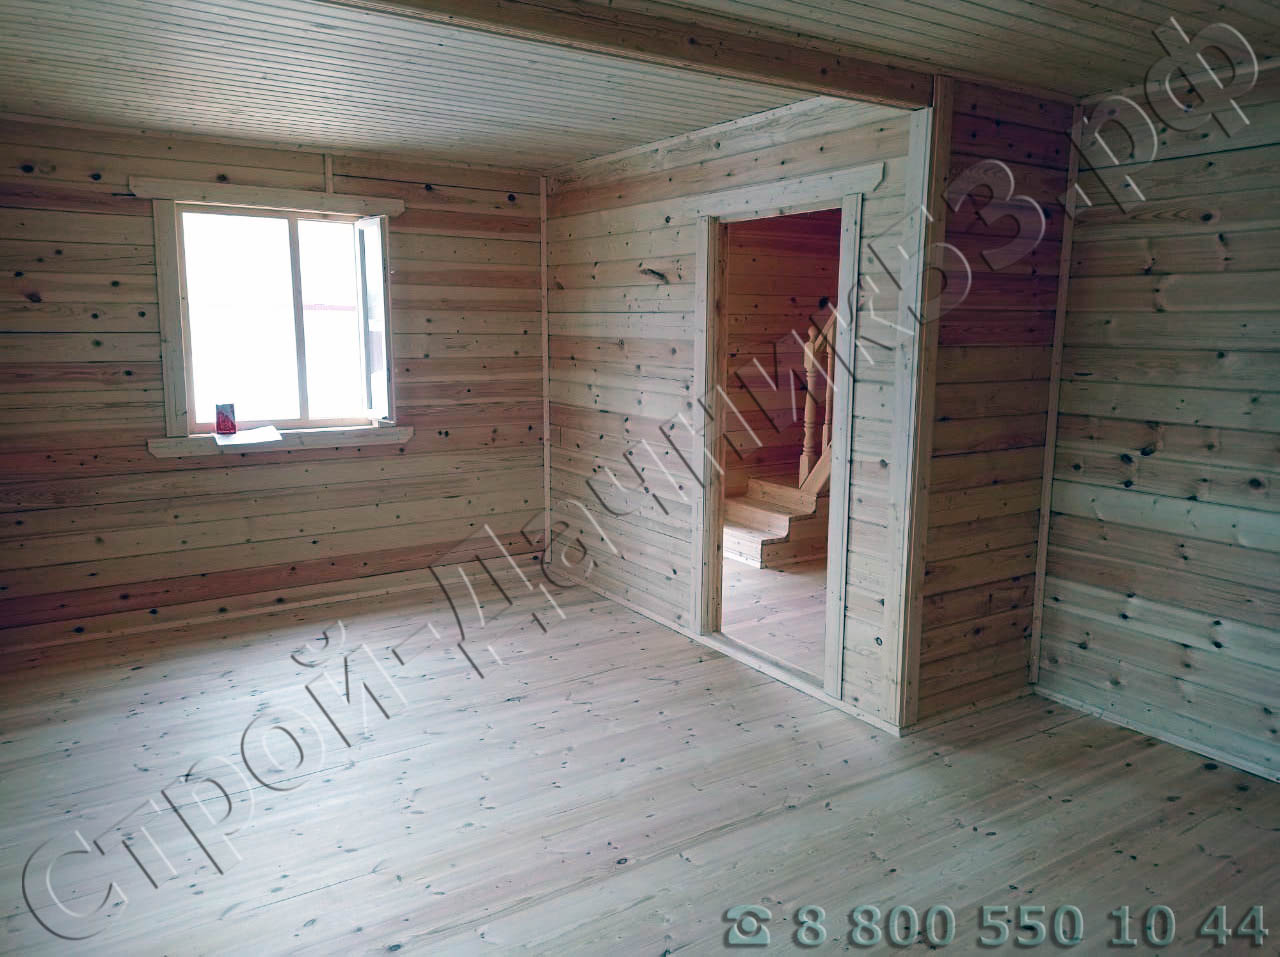 Внутренняя отделка, спальня, установлены деревянные окна с двойным остеклением (имитация стеклопакета)